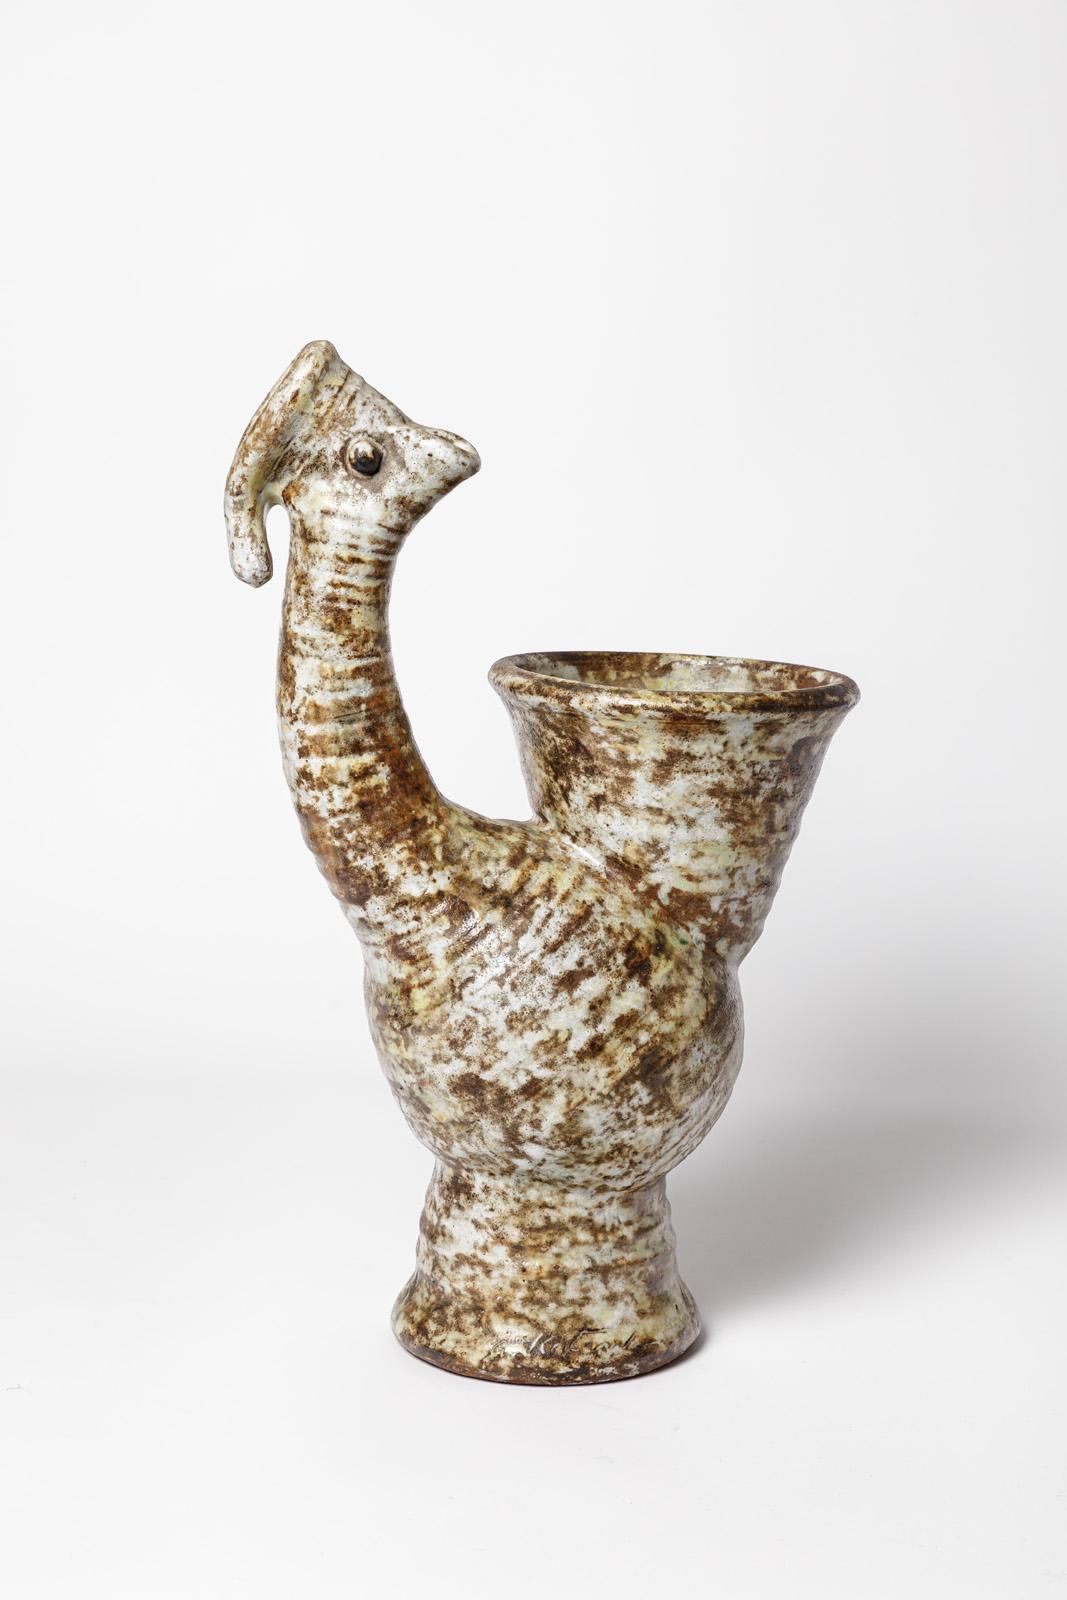 Alexandre Kostanda (1921-2017) - Vallauris

Grand vase ou sculpture abstraite en céramique représentant un coq ou un oiseau.

Couleurs des émaux céramiques blancs et marron clair.

Réalisé vers 1950

Signé à la base.

état original